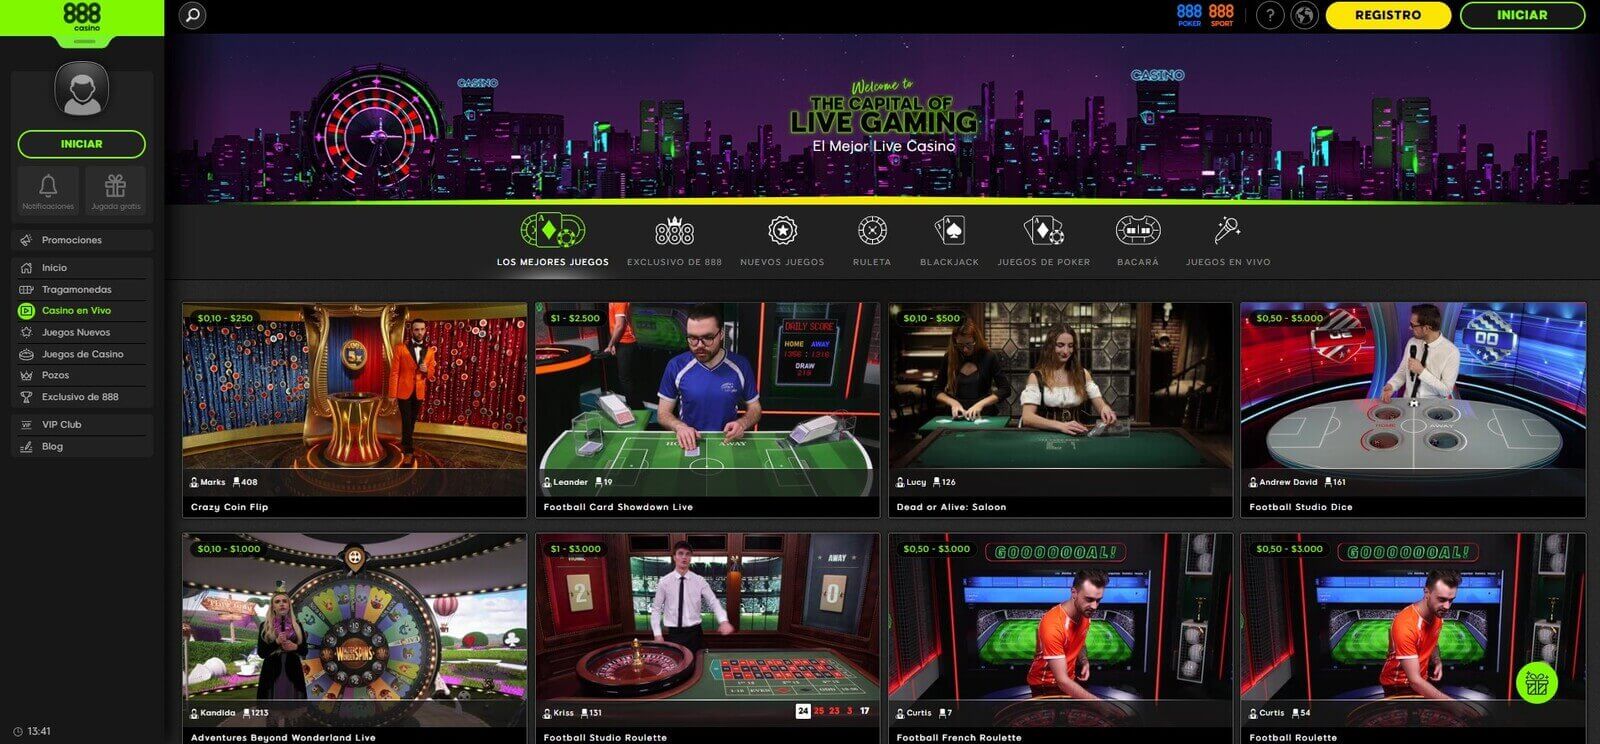 Juegos en directo del casino 888 online en Latinoamérica